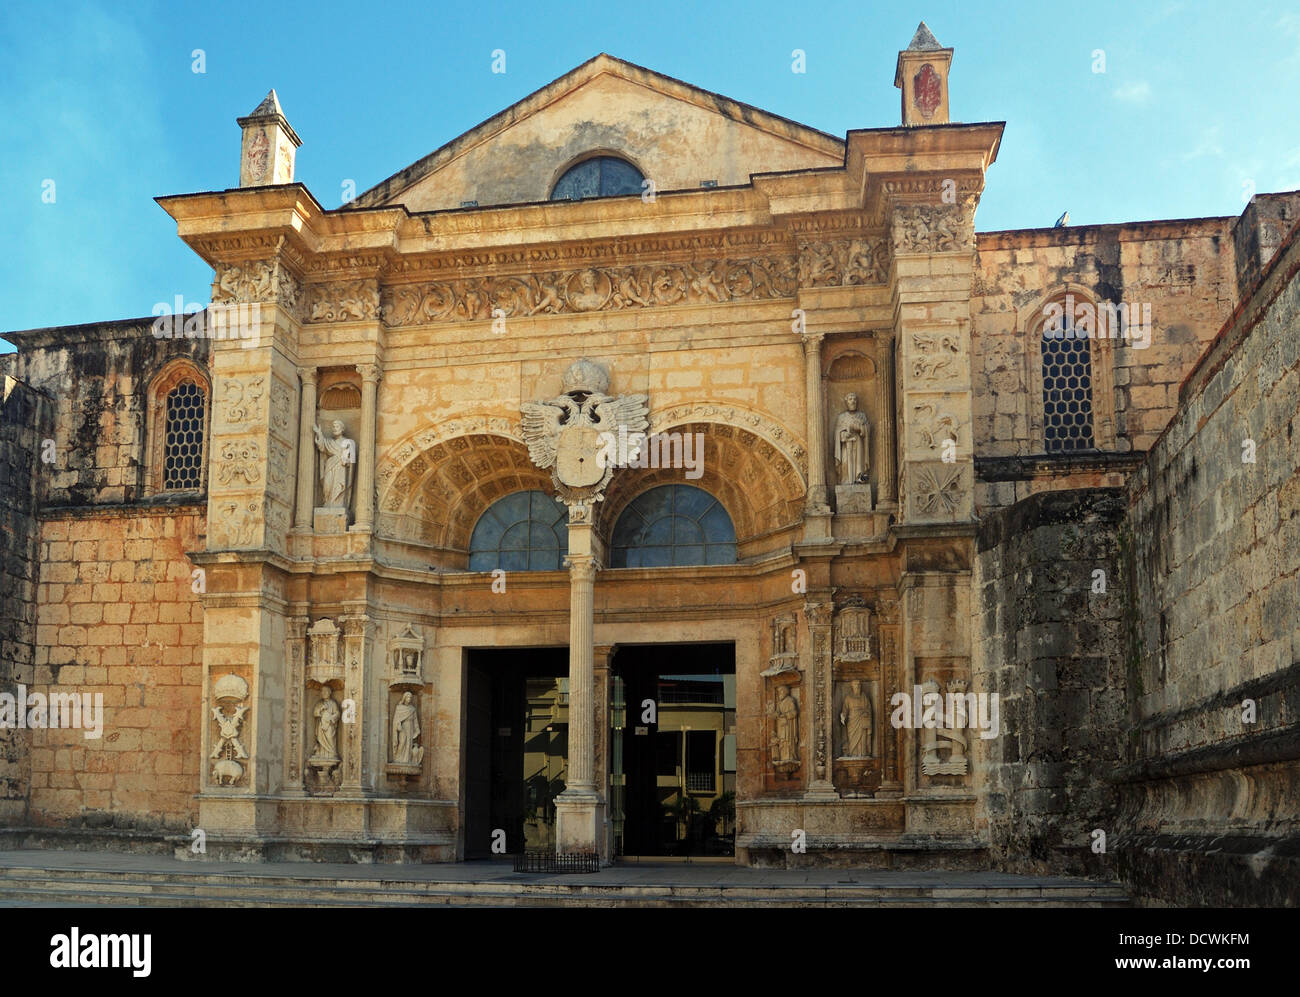 Fassade der Kathedrale von Santa Maria Menor (älteste in der neuen Welt), Santo Domingo, Dominikanische Republik, Karibik. Stockfoto